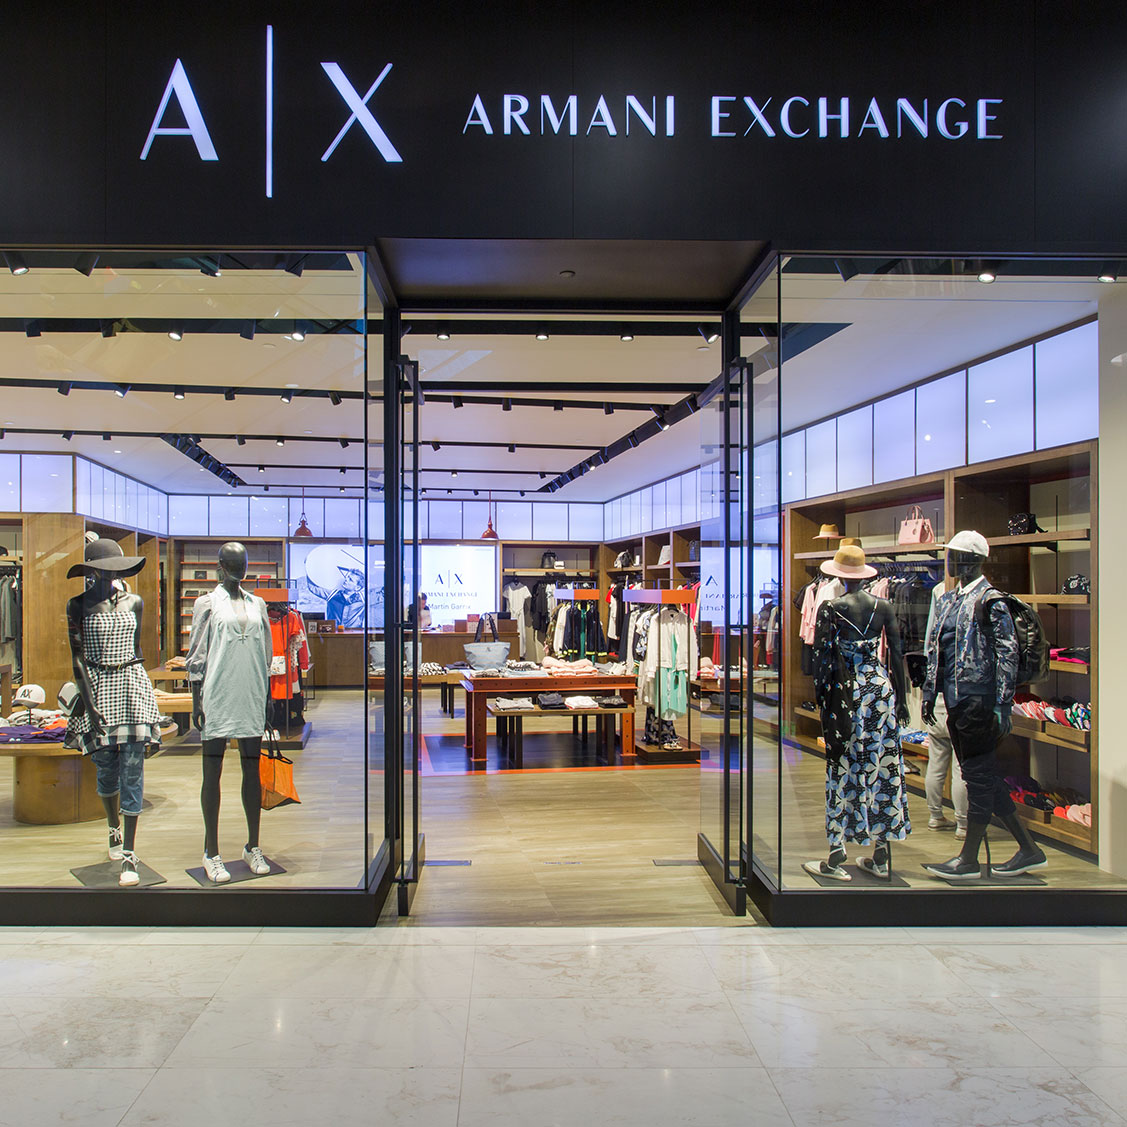 Armani exchange outlet. Armani Exchange магазин. Пакет Армани эксчендж. A/X Armani Exchange.